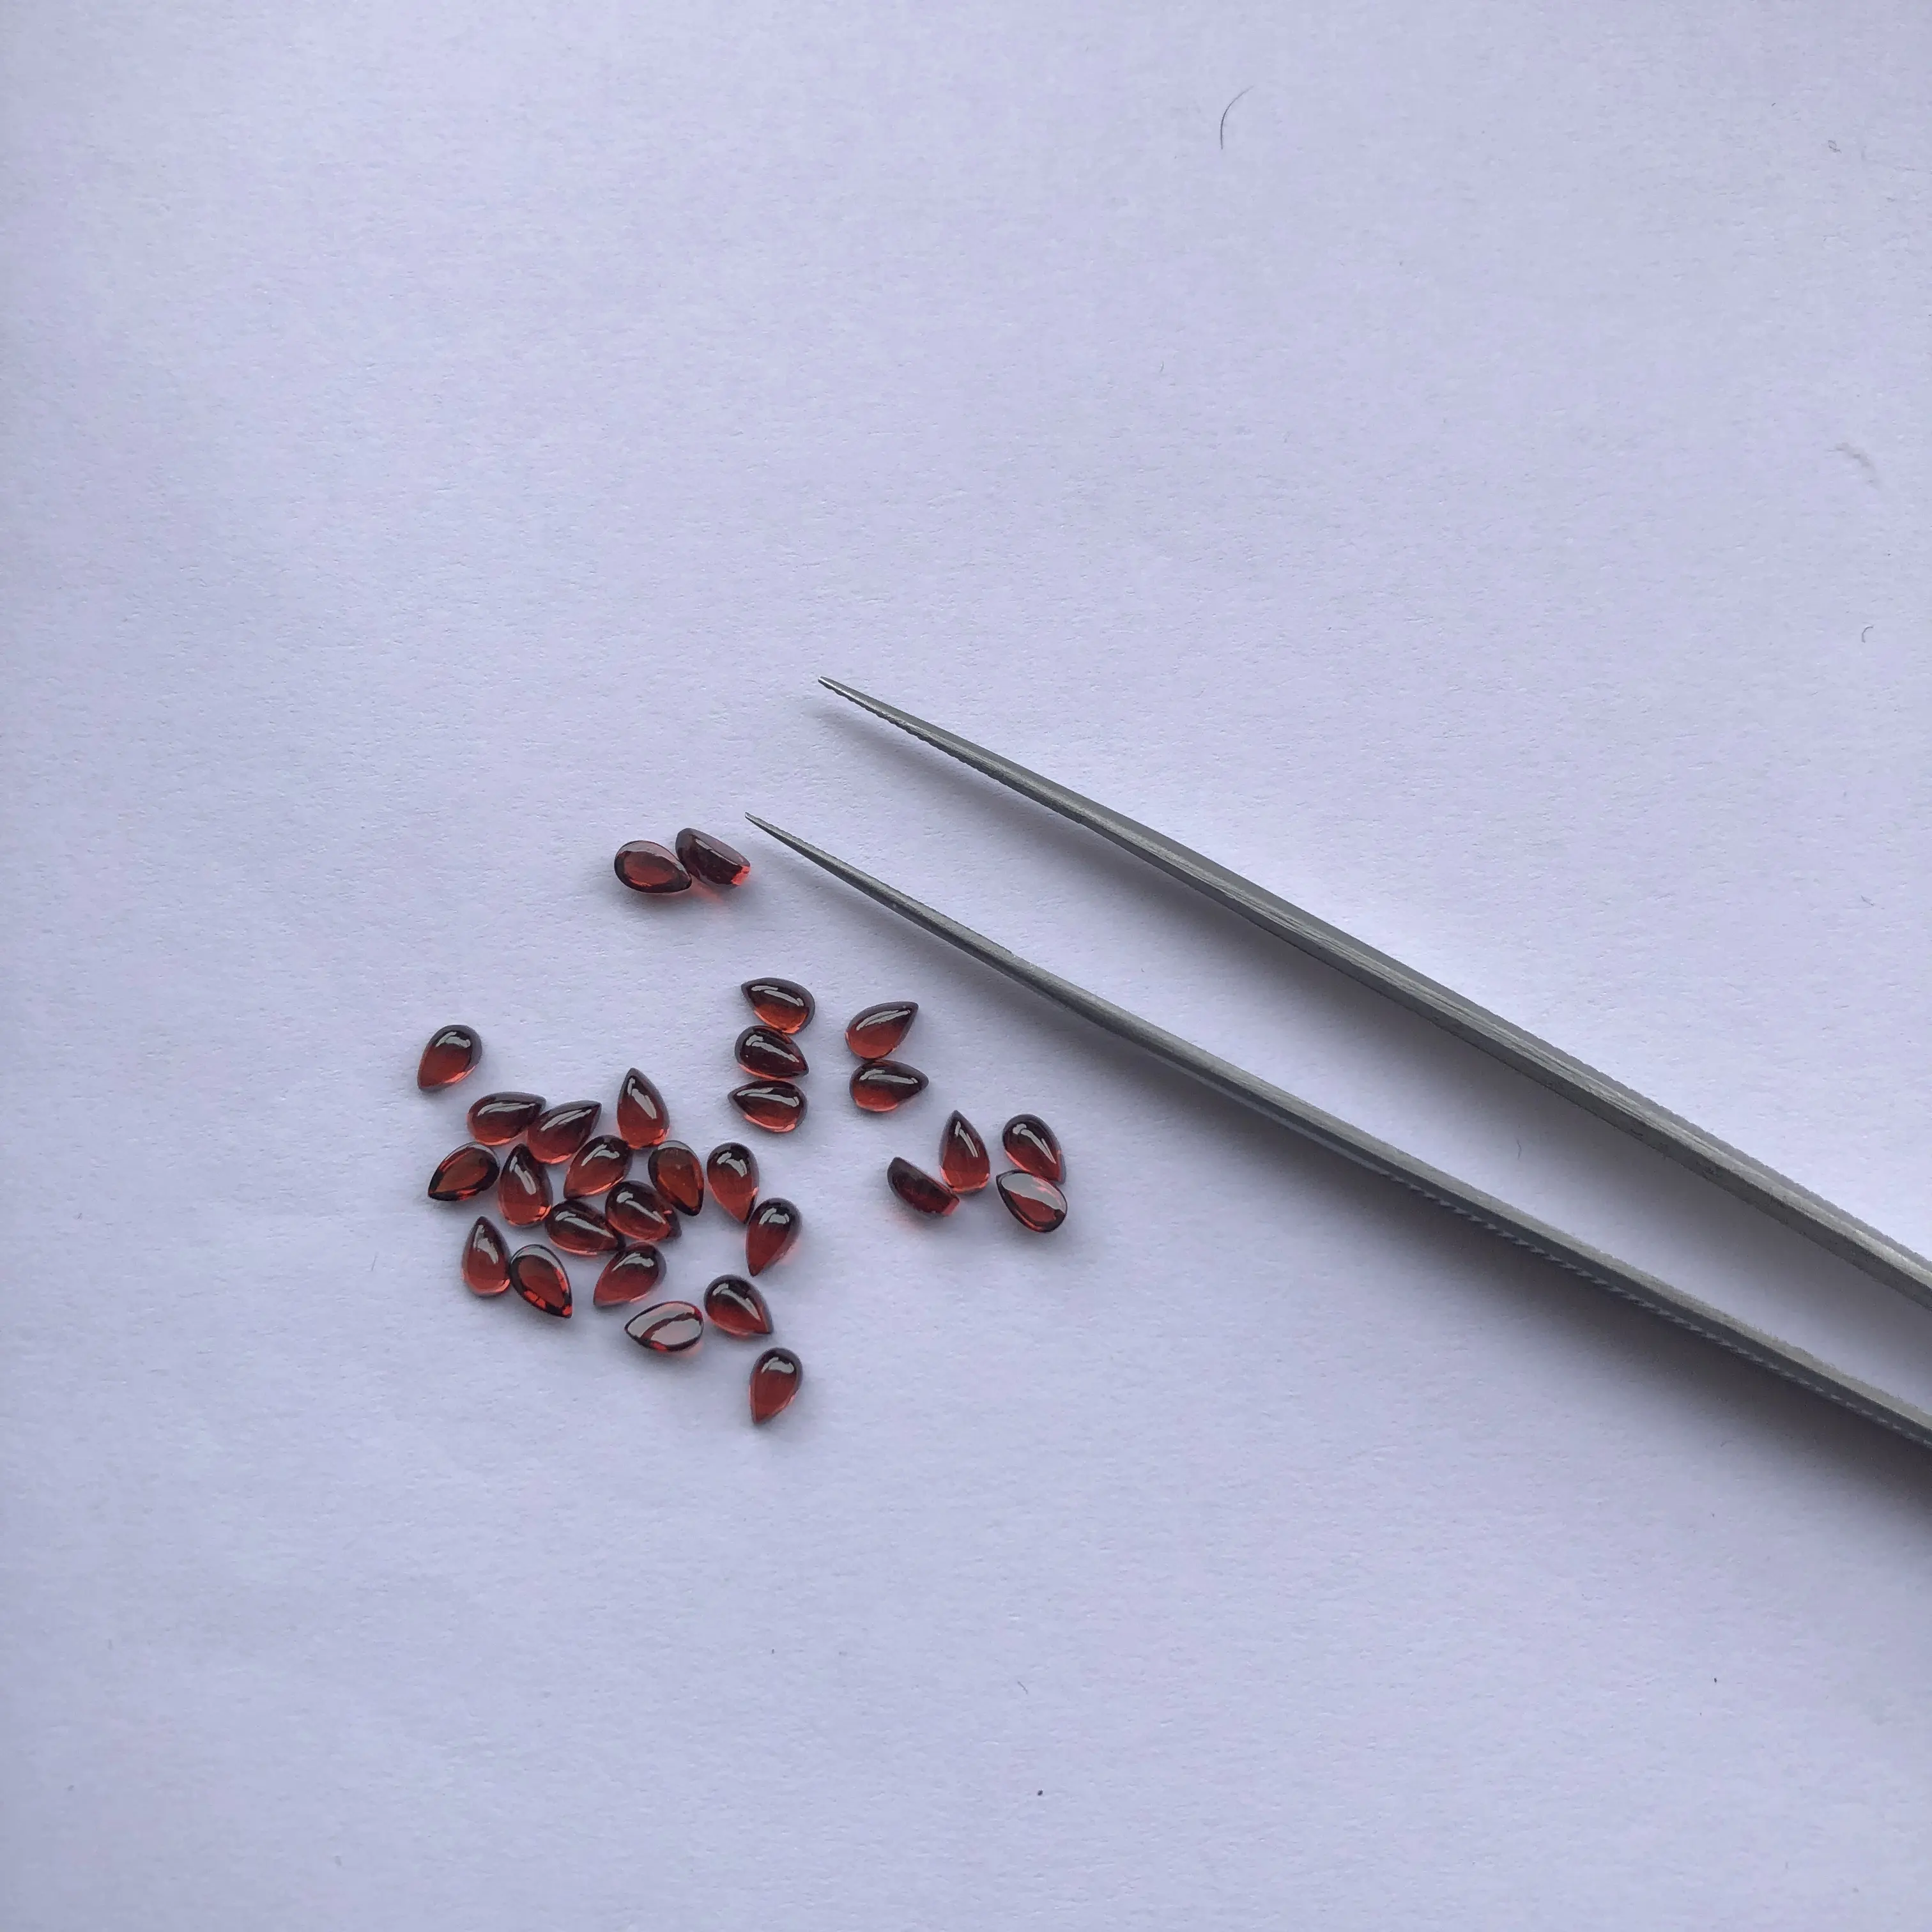 4X3mm naturel rouge grenat pierre lisse poire lâche Cabochon pierres semi-précieuses du fabricant en gros fabrication de bijoux acheter